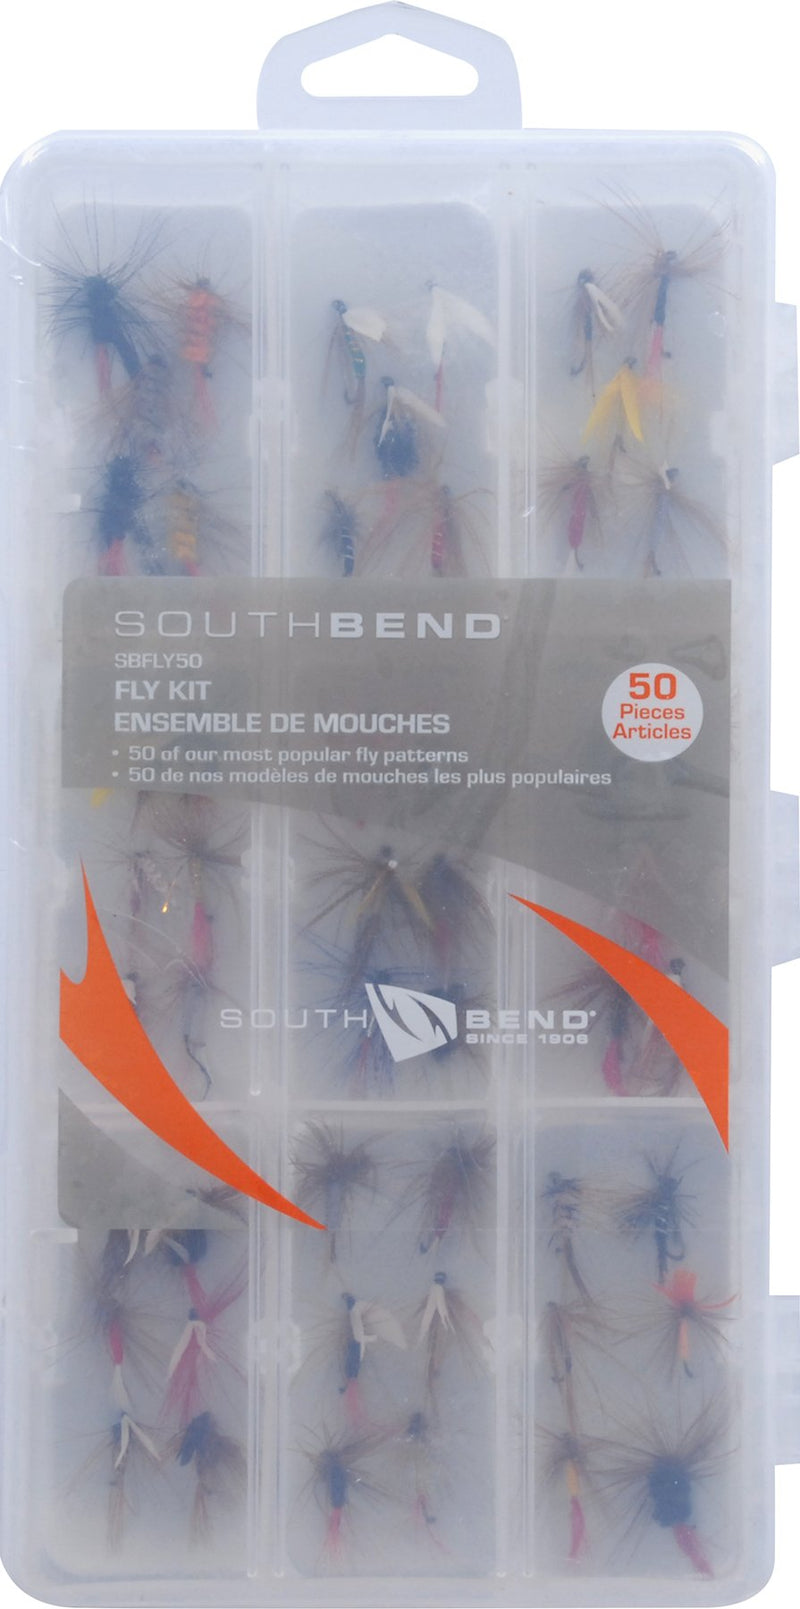 SouthBend Fly Kit, 50-Piece, Multi, One Size - NewNest Australia